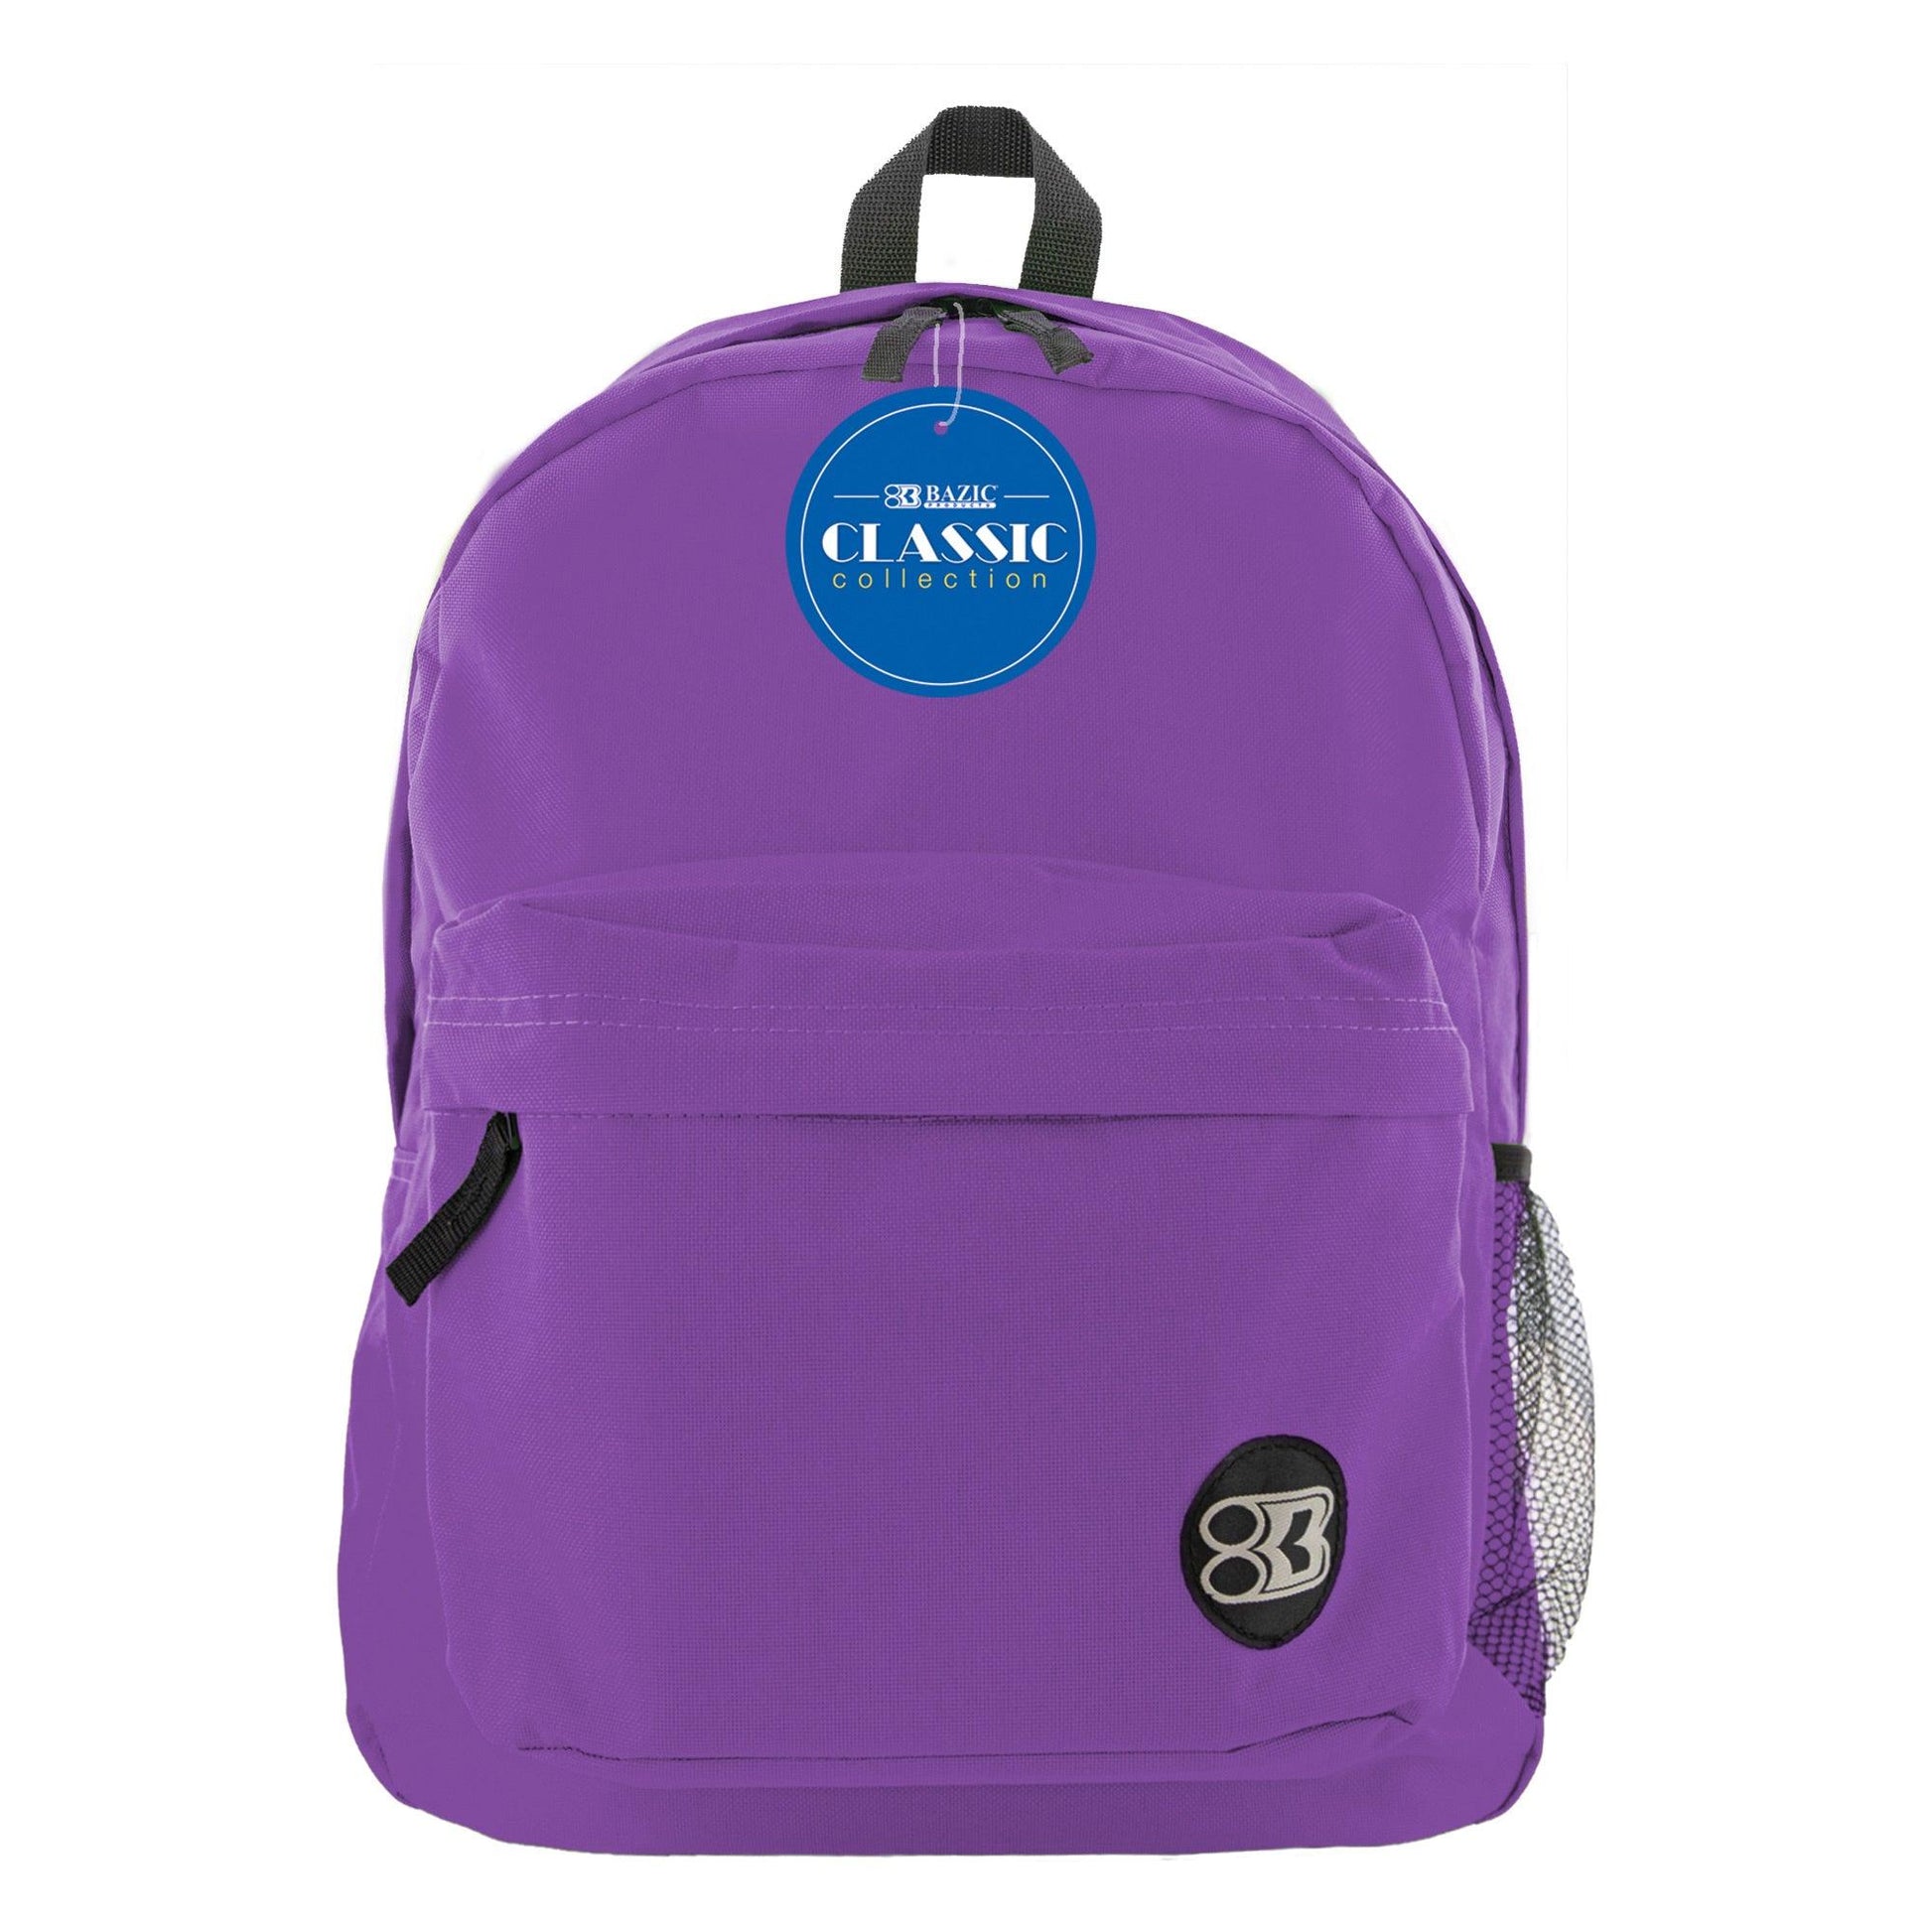 Classic Backpack 17" Purple, Pack of 2 - Loomini